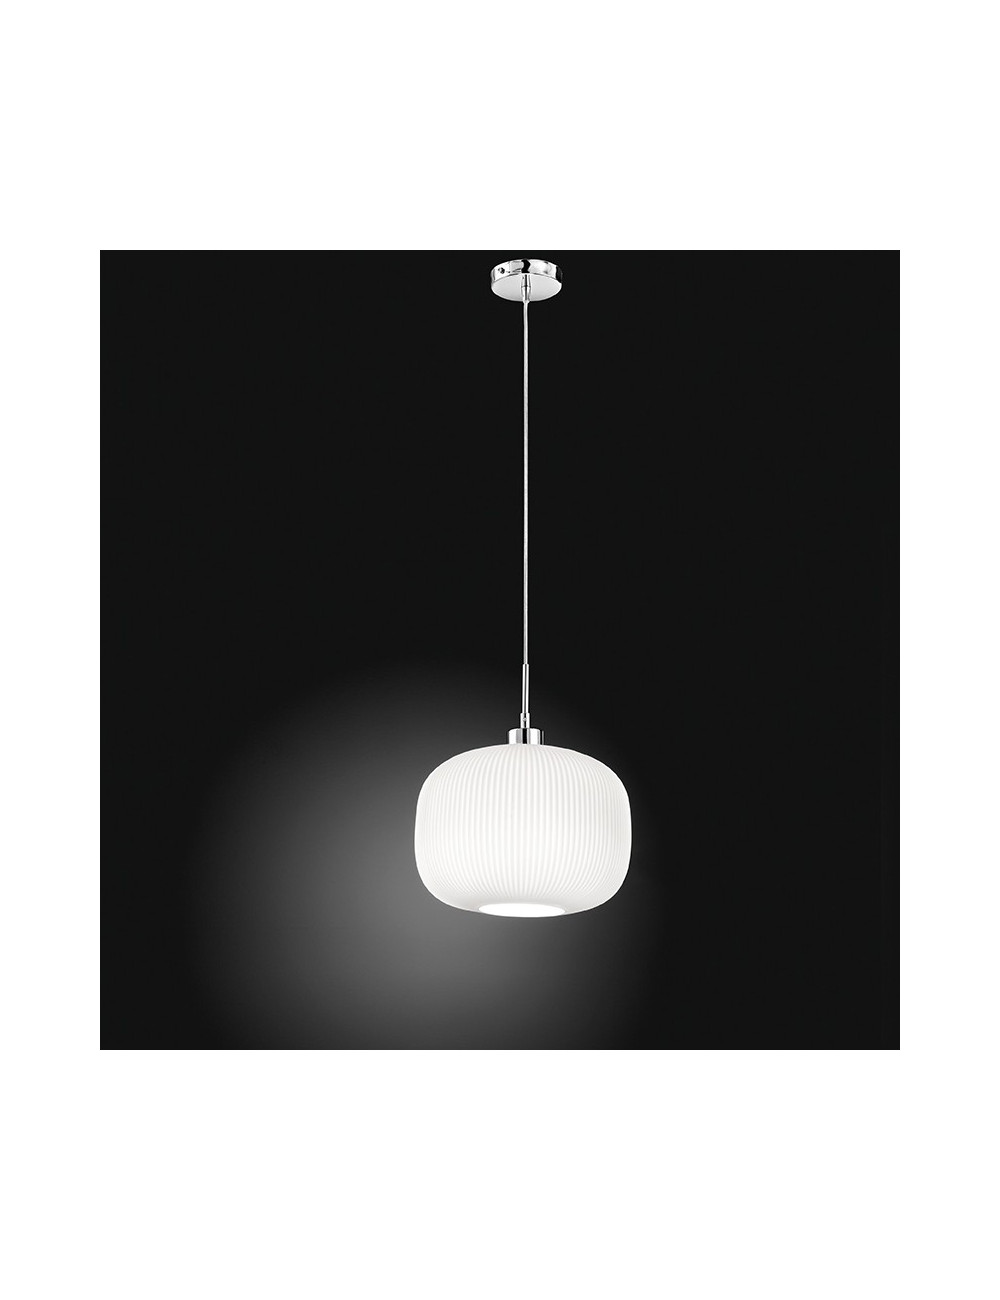 SWEET 6342 Perenz illuminazione | Lampada a Sospensione Moderna Vetro Bianco Rigato